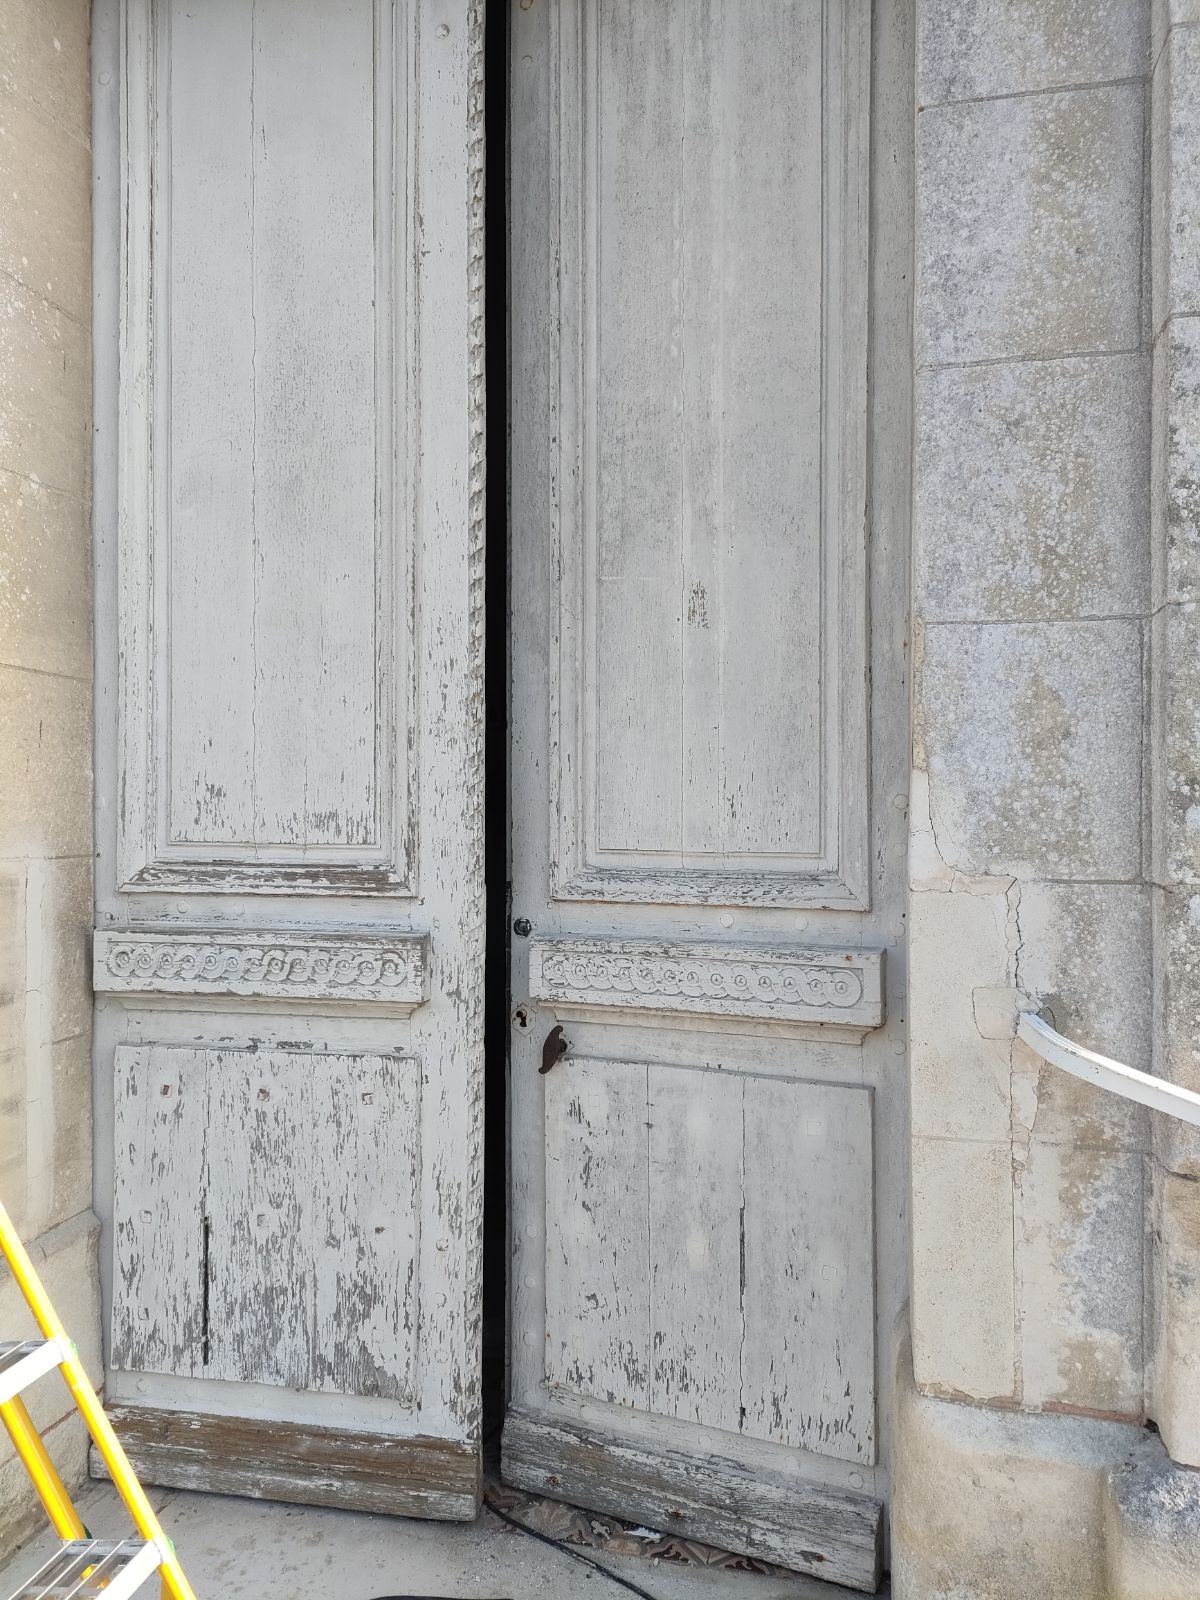 réfection d'une porte d'entrée intérieure et extérieur près de la commune de Rouen